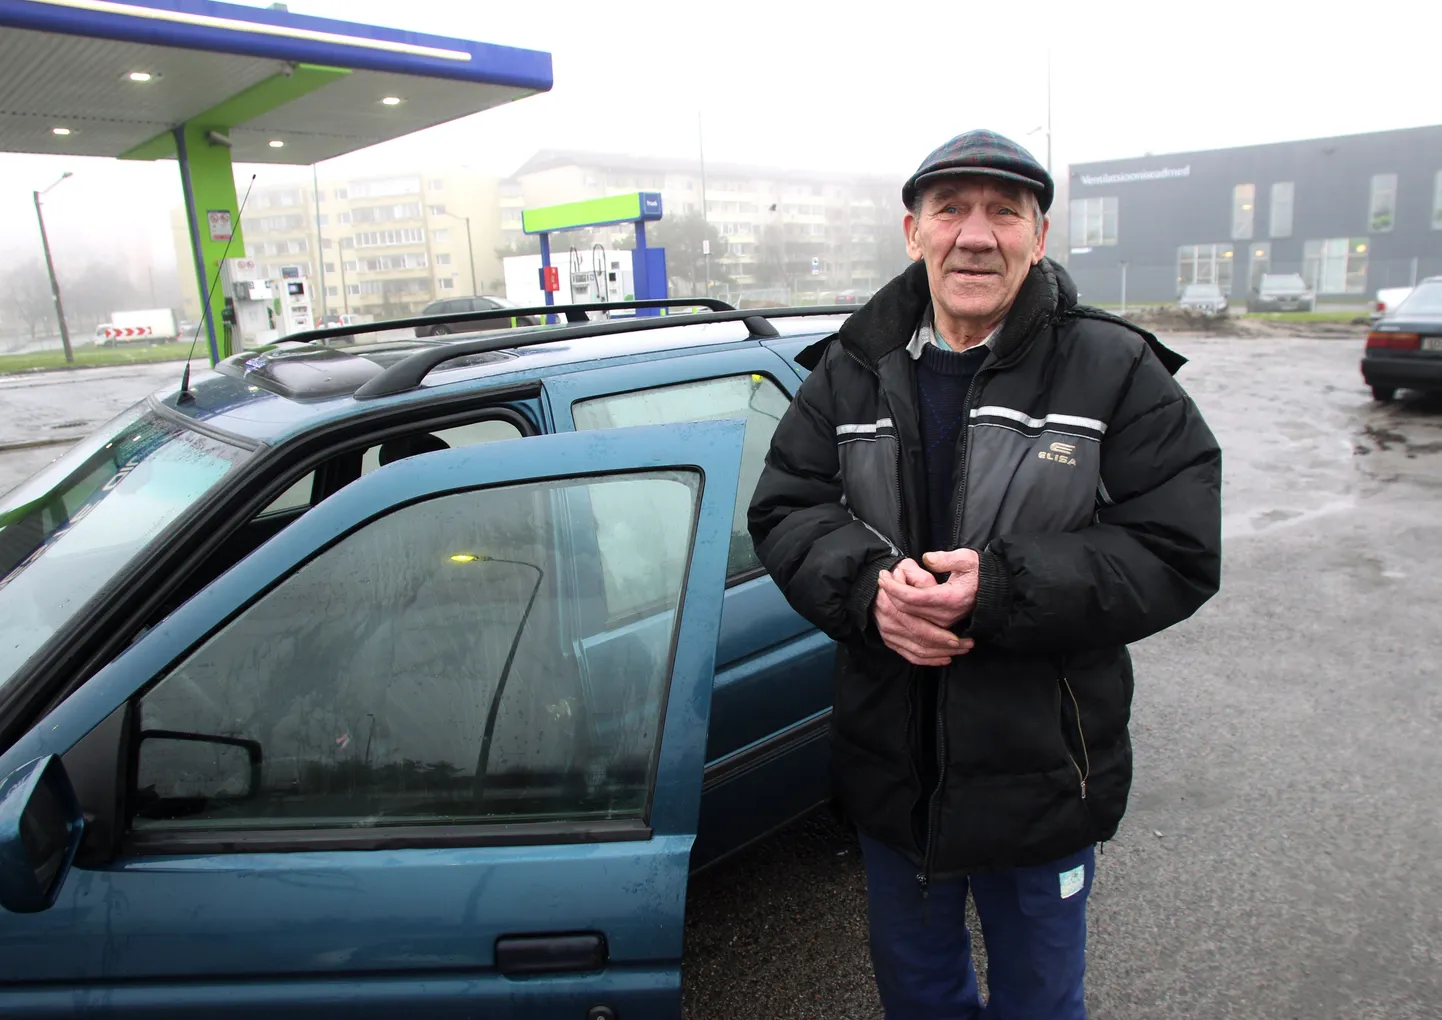 70-летний Иосиф Ролич признает, что нарушил скоростной режим. Но зачем же обдирать пенсионера как липку?